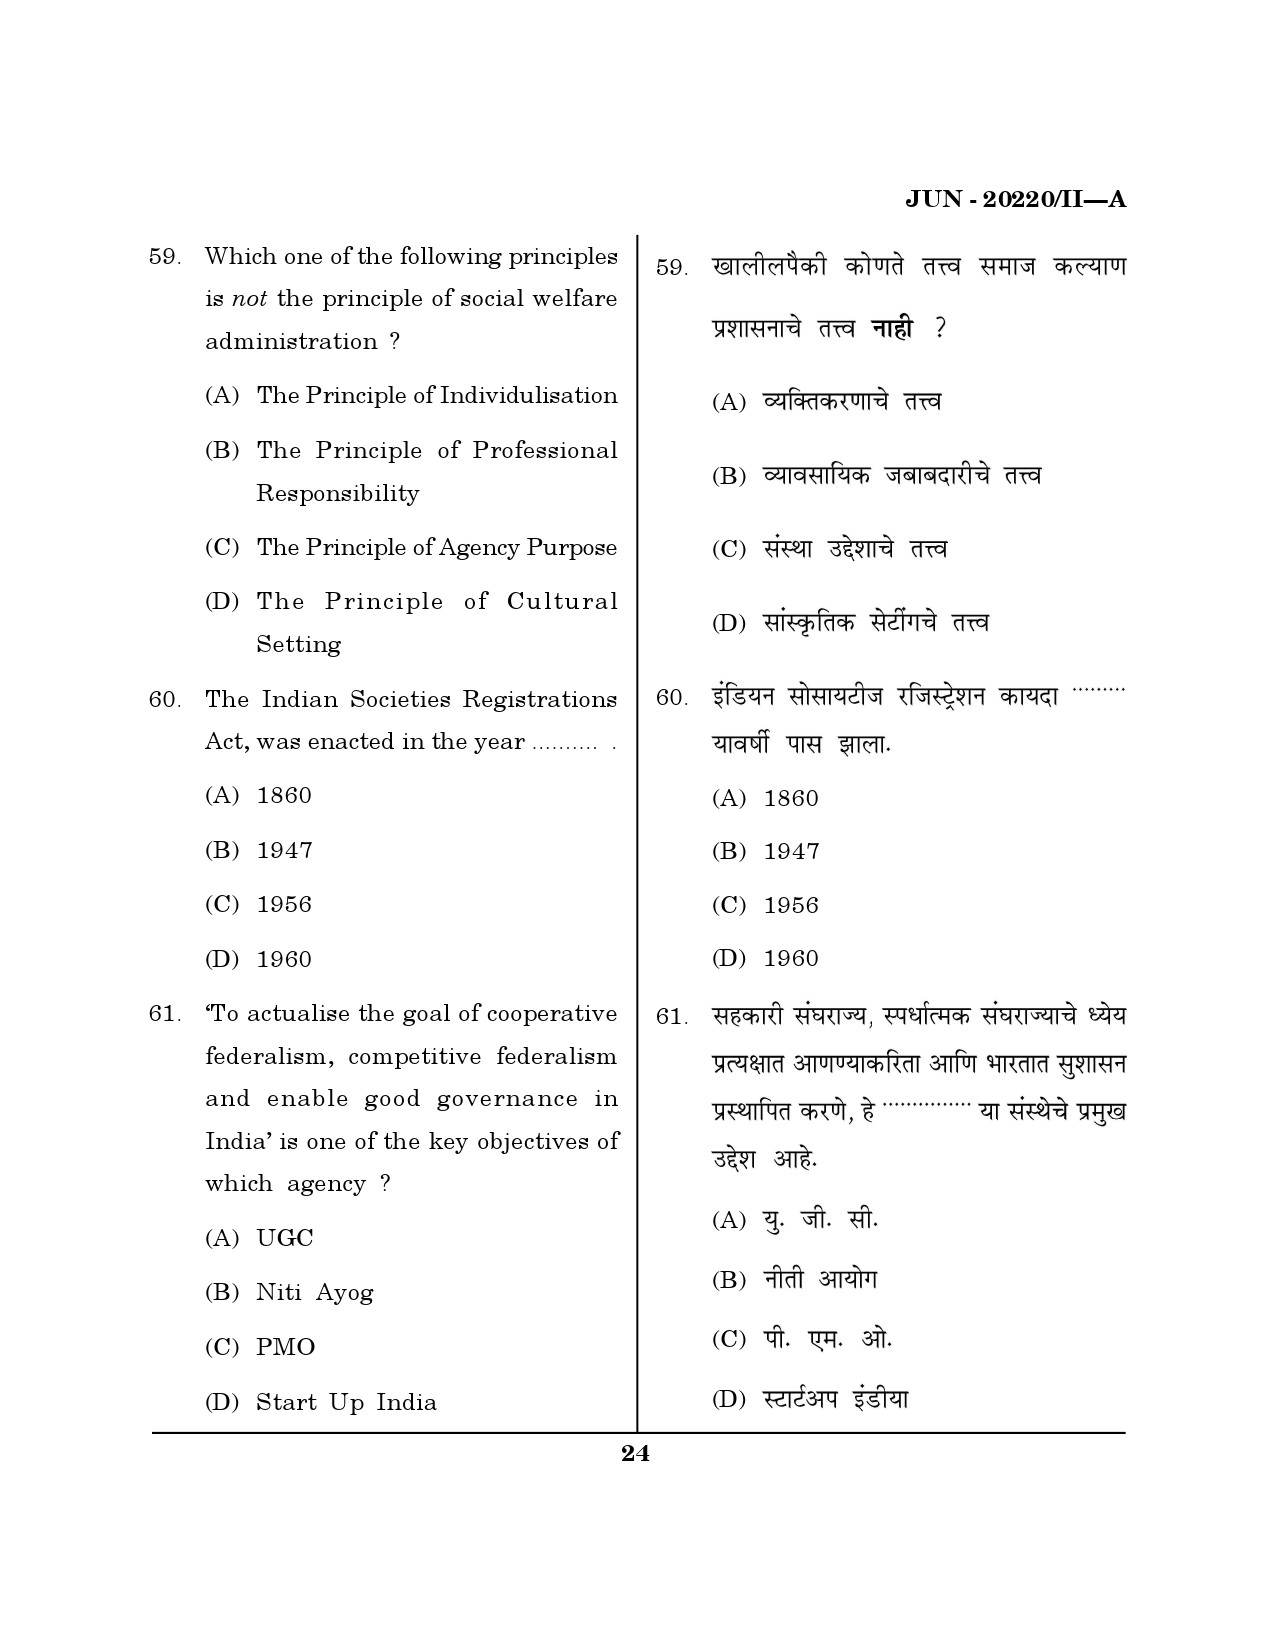 Maharashtra SET Social Work Question Paper II June 2020 23